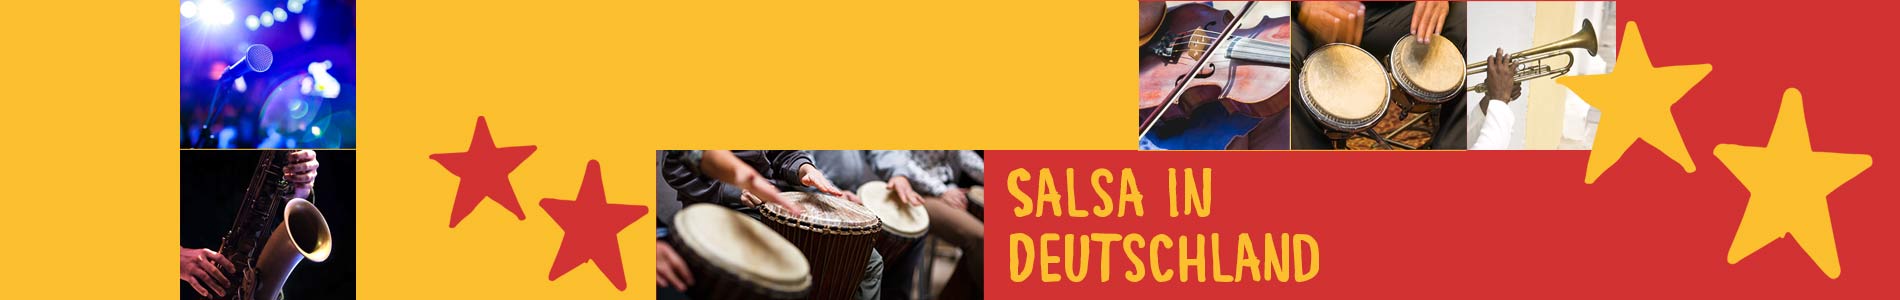 Salsa in Dahn – Salsa lernen und tanzen, Tanzkurse, Partys, Veranstaltungen